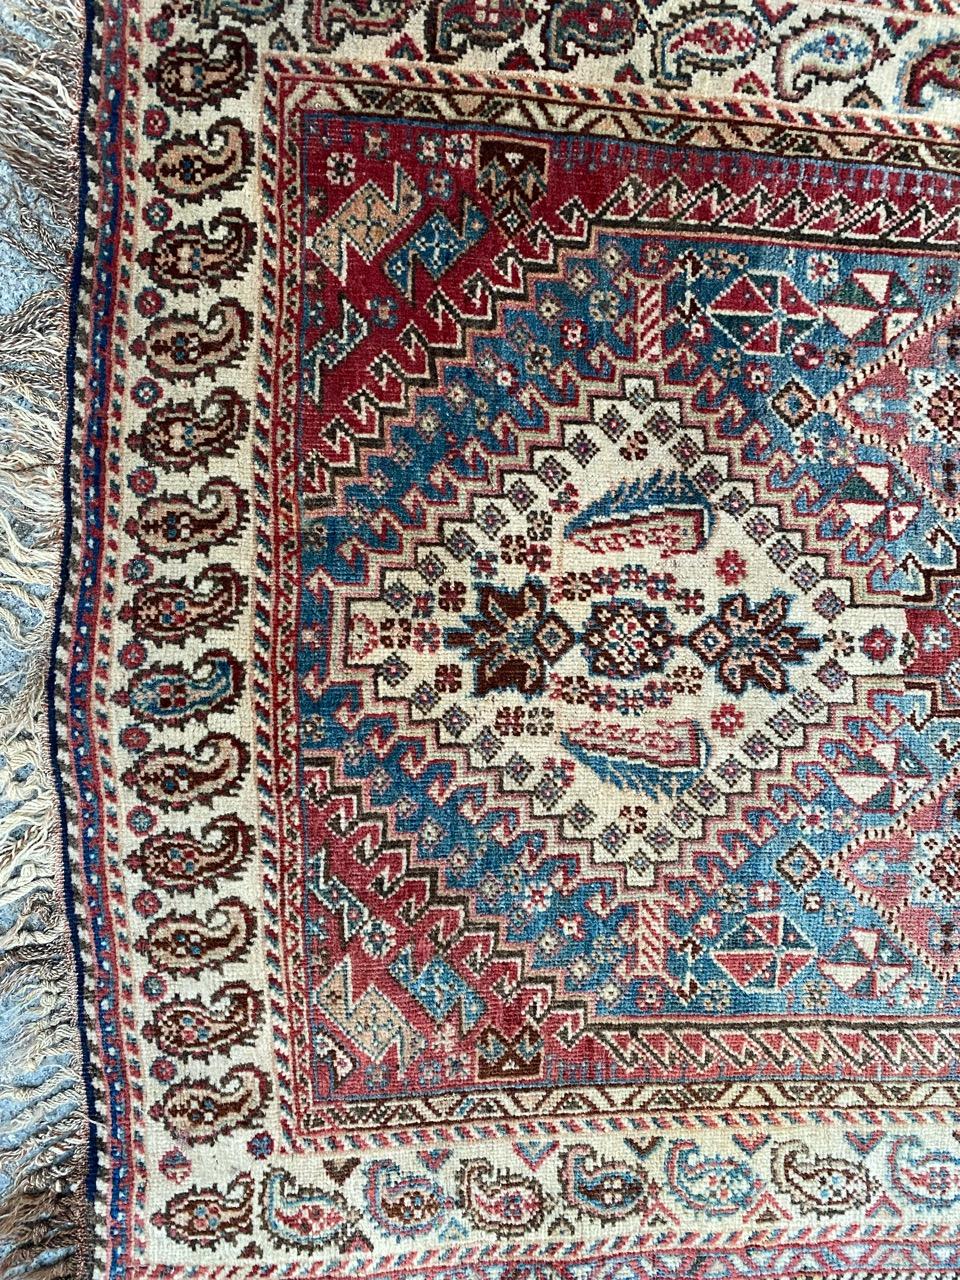 Joli tapis ancien de ghashghai avec de beaux motifs géométriques et tribaux et de belles couleurs naturelles, entièrement noué à la main avec du velours de laine sur une base de laine.

✨✨✨
